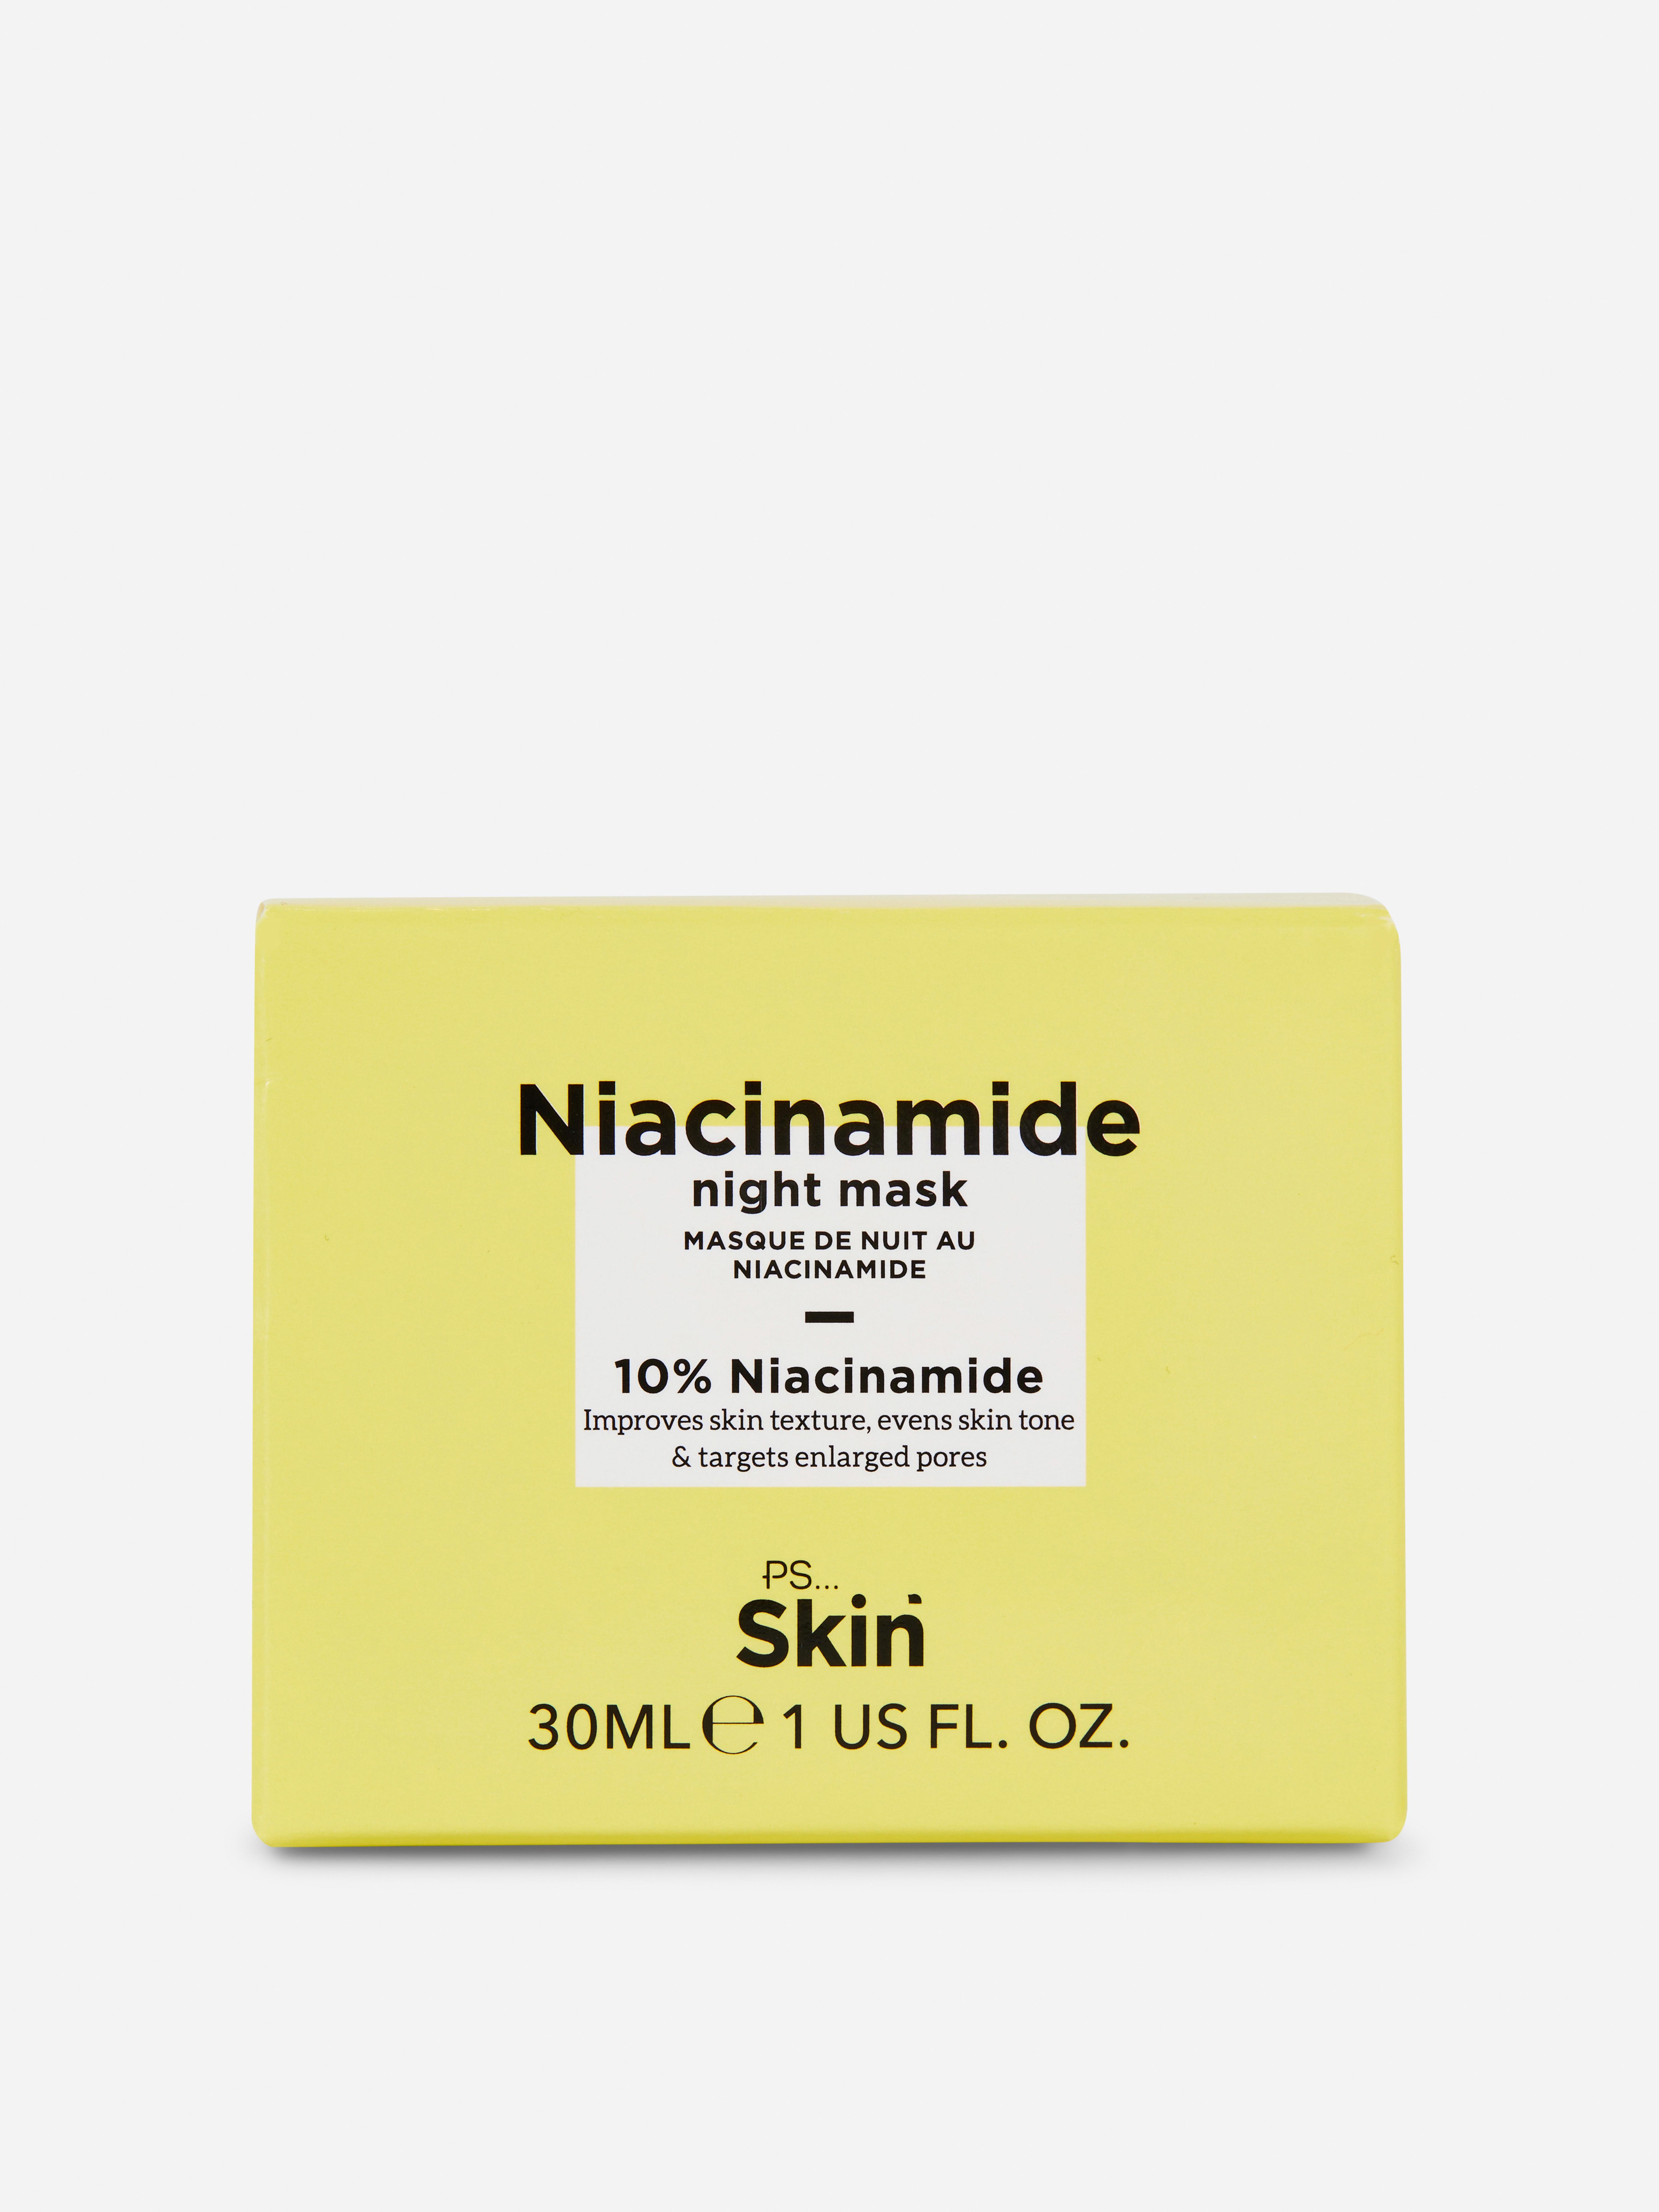 PS… Skin + Niacinamide Night Mask